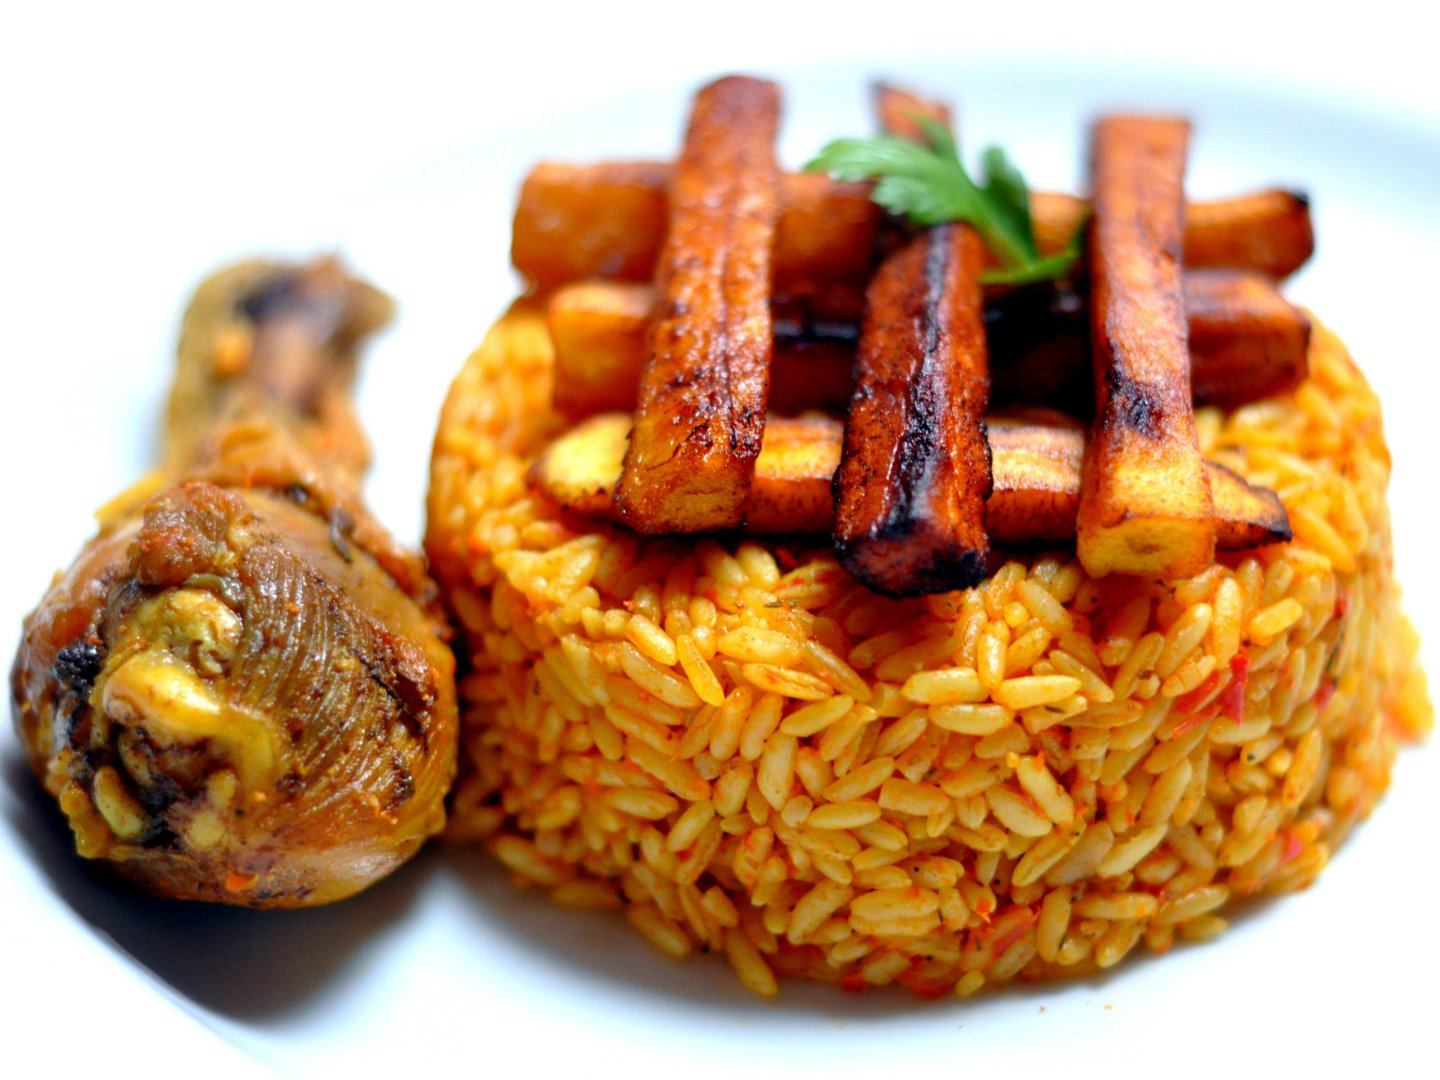 nigerian wedding reception food choices